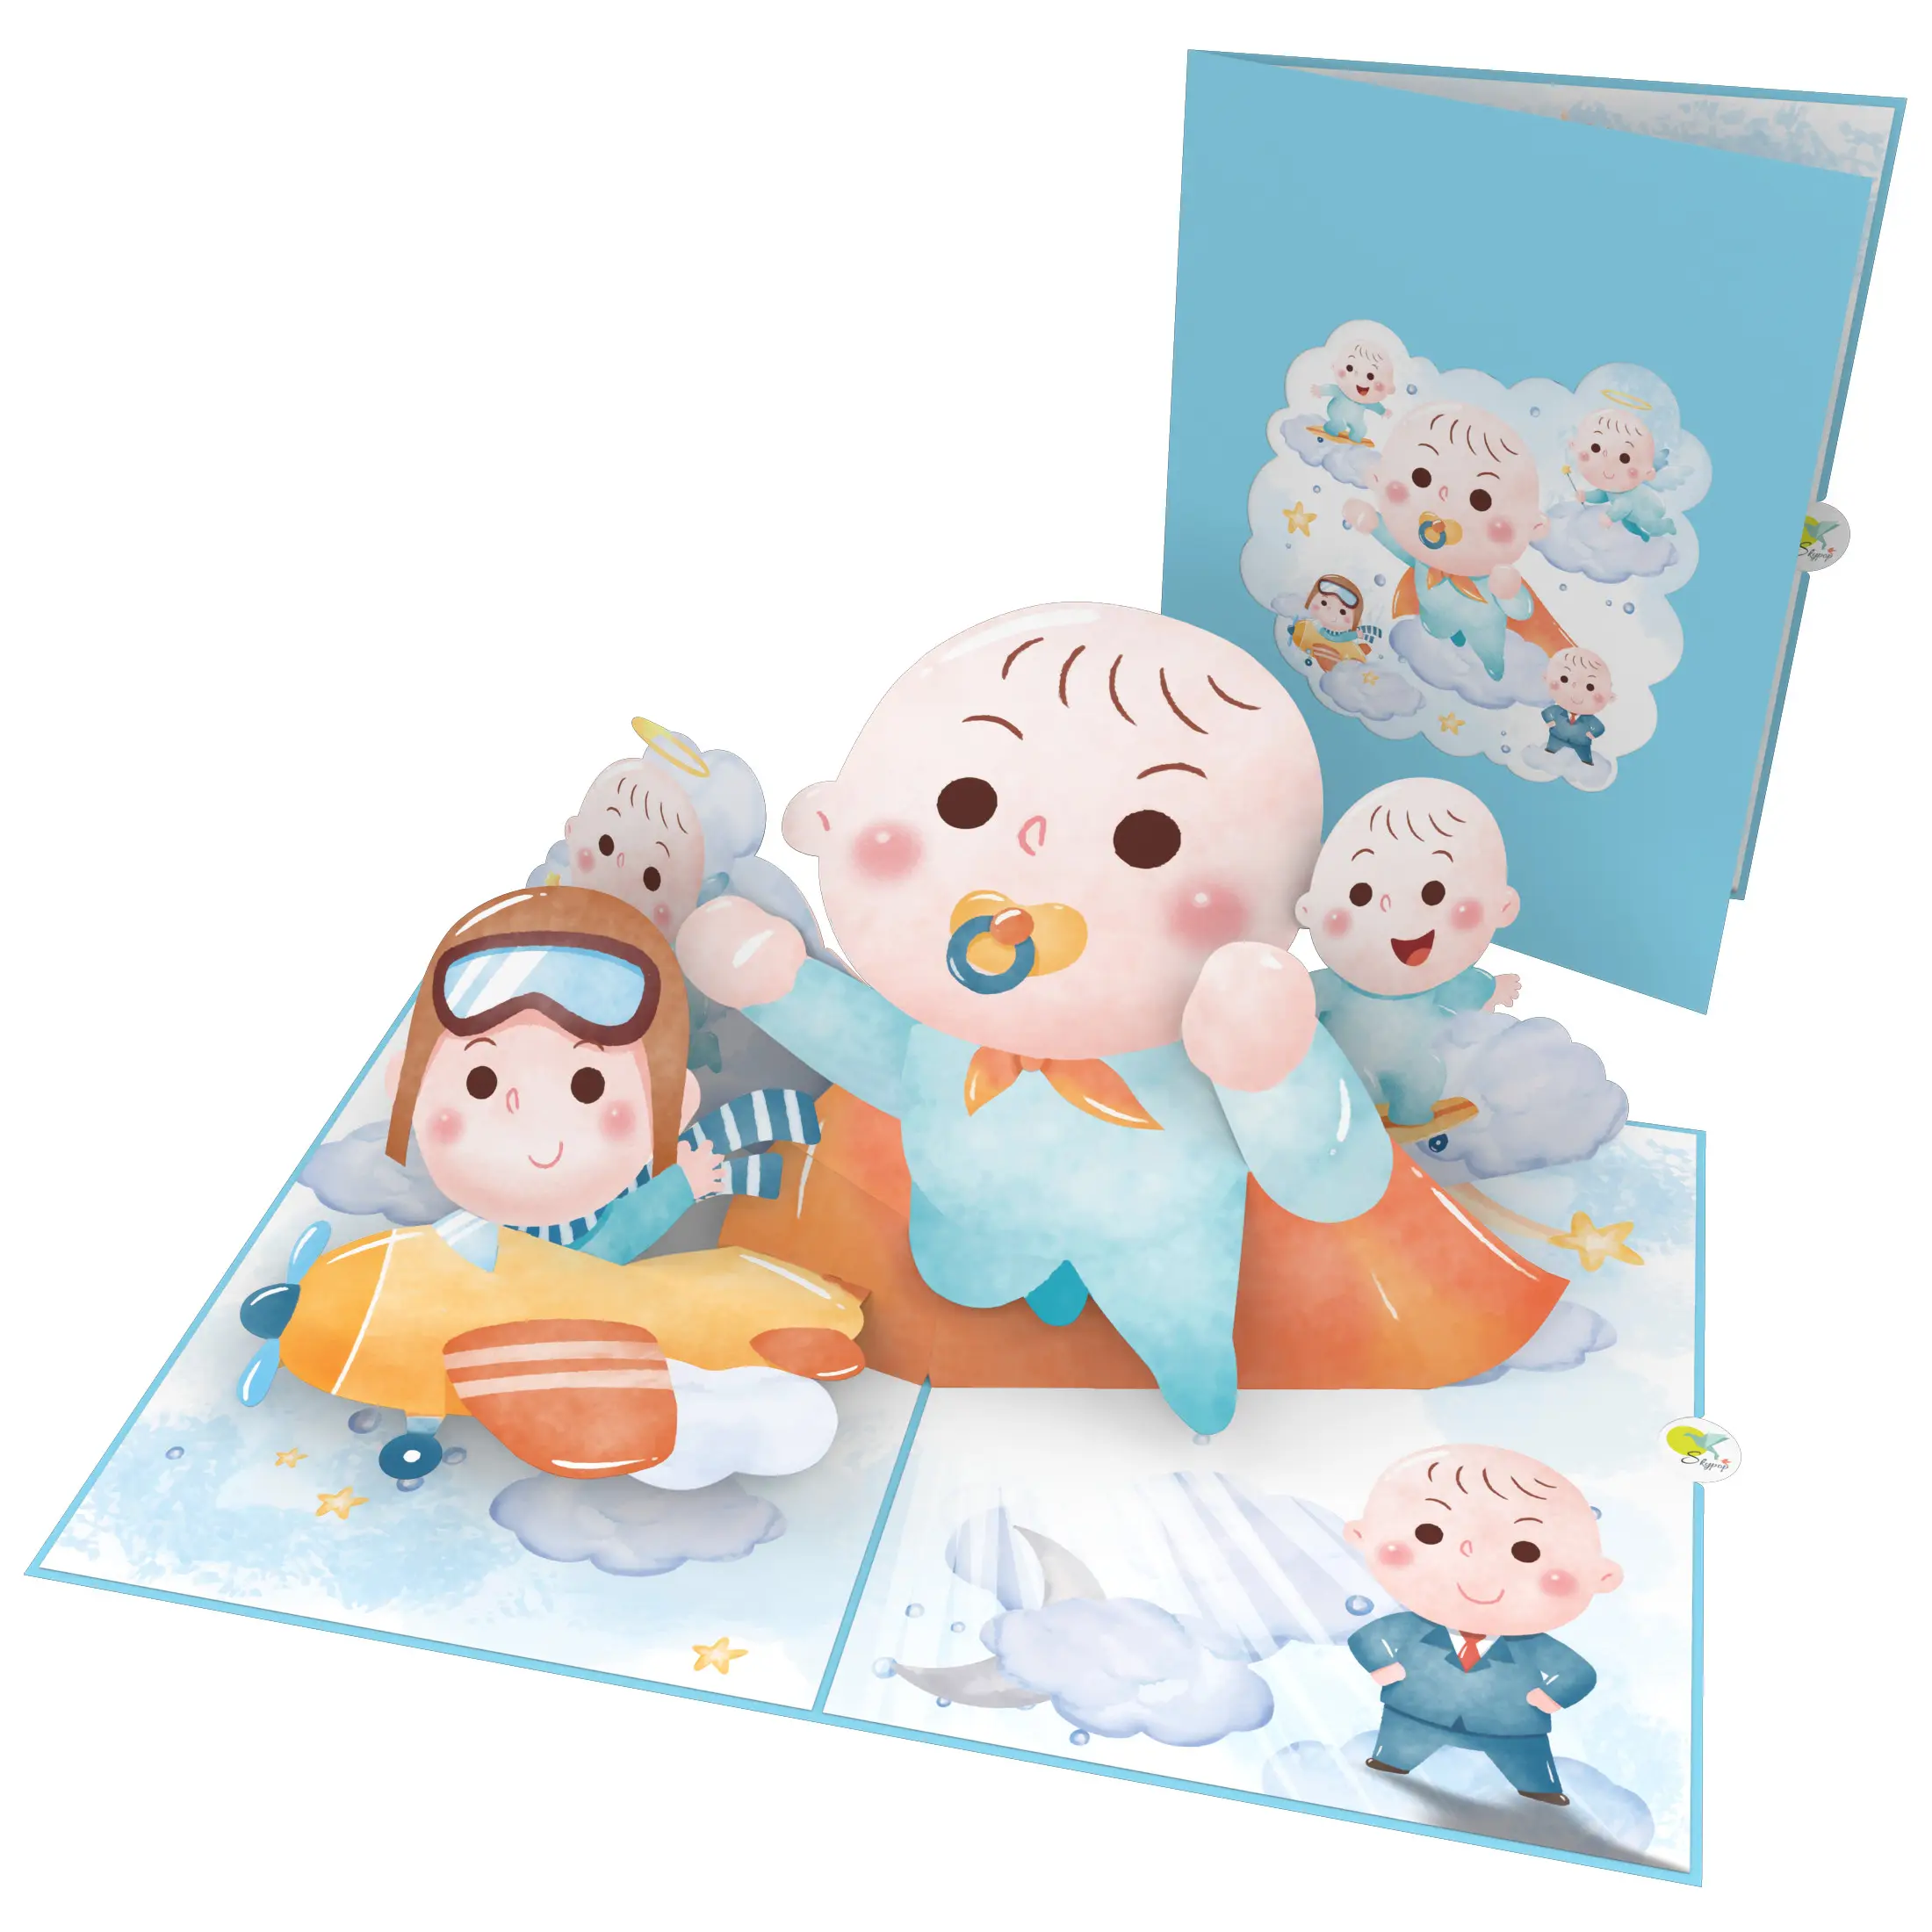 Baby Moments 3D Pop Up Card Venta caliente Best Seller para cumpleaños de bebé Recién nacido Fiesta Aniversario Tarjeta 3D Papel hecho a mano Las